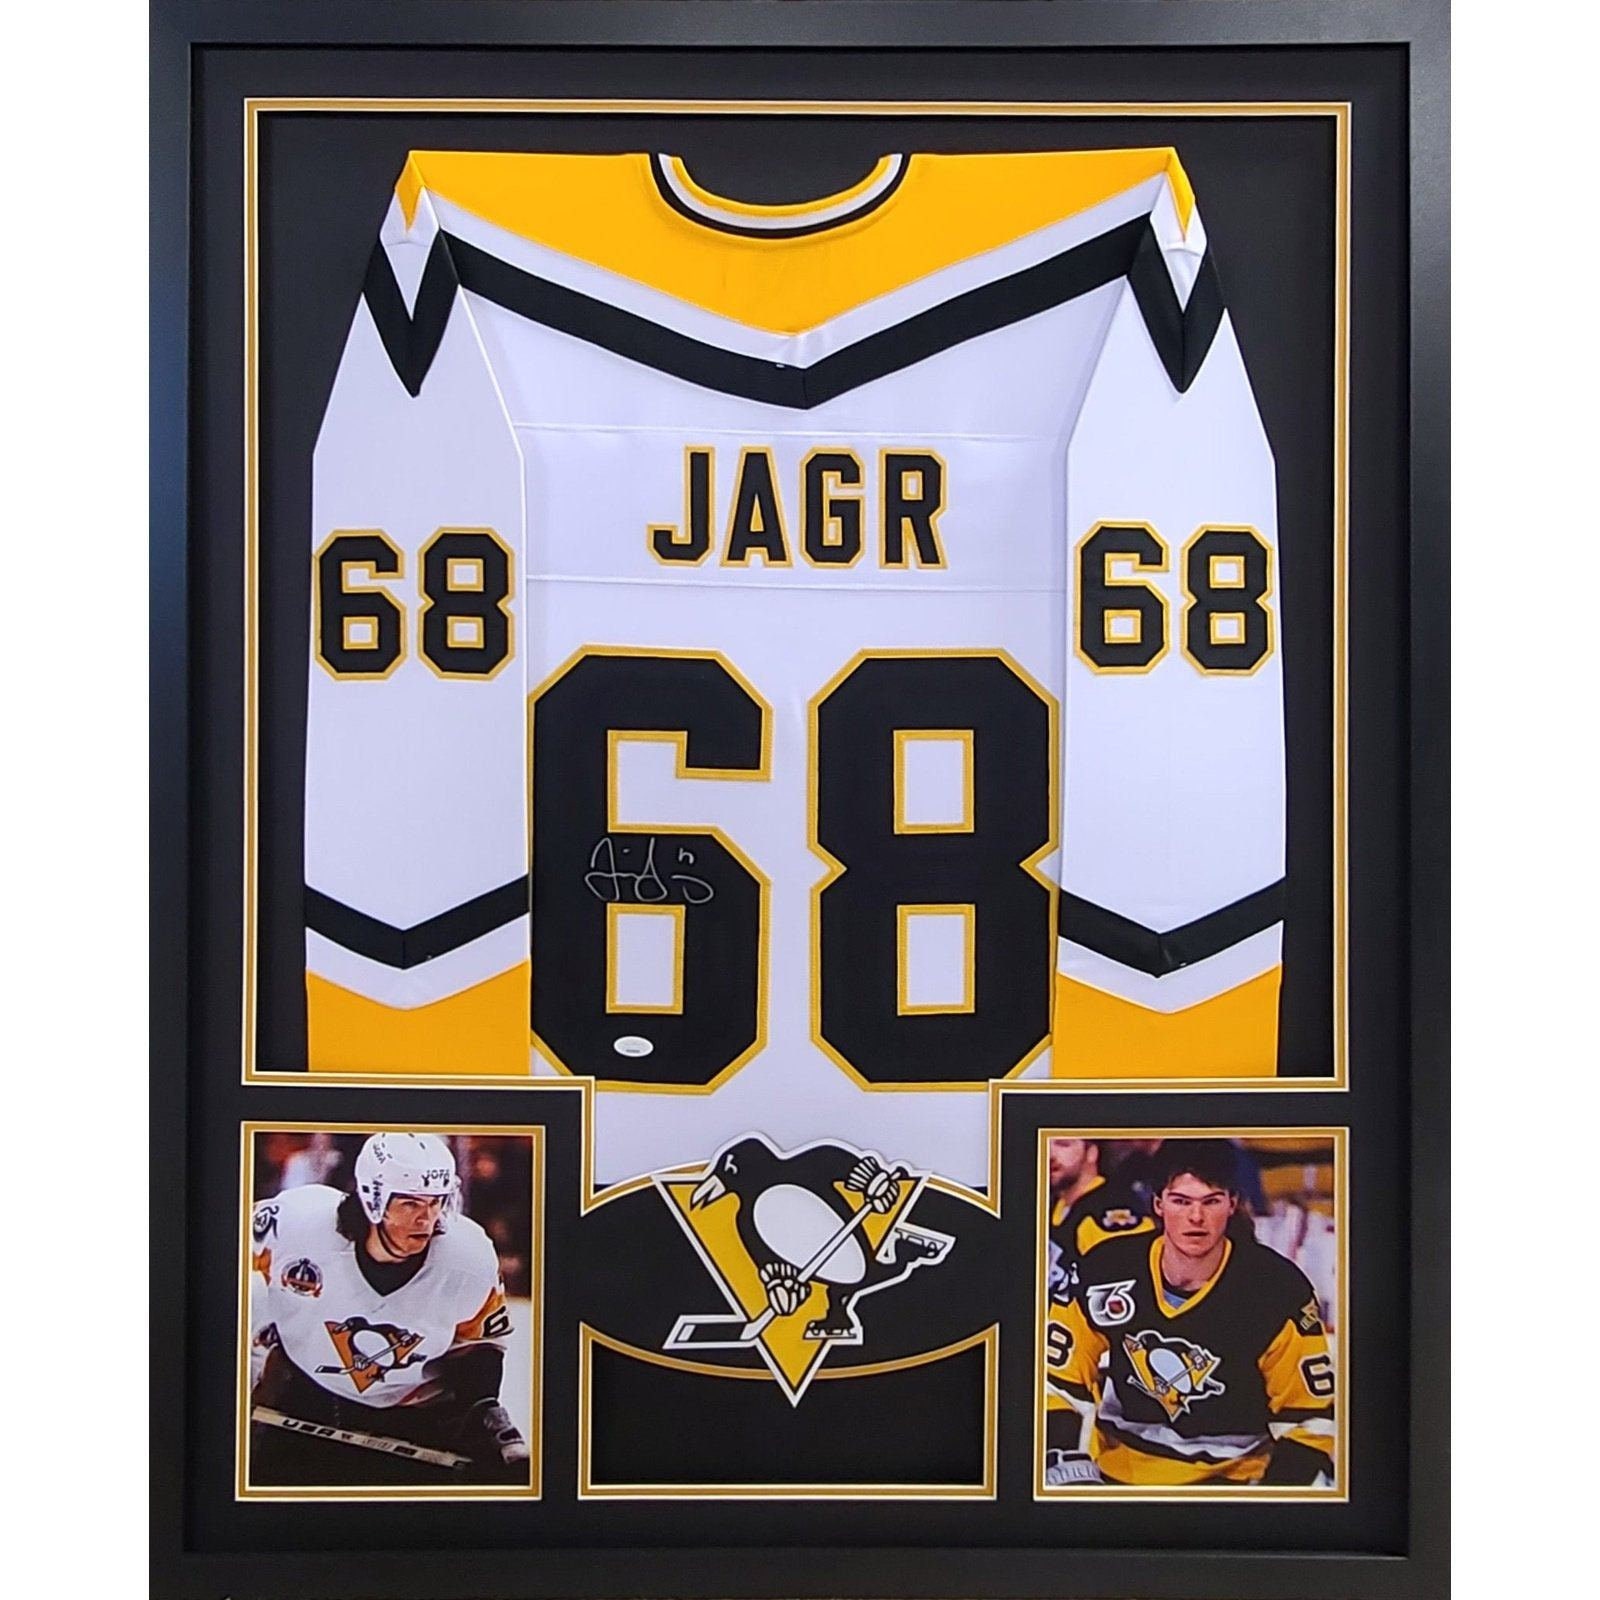 1996 Jaromir Jagr Eastern Conference Penguins NHL All Star CCM Jersey Size  Large – Rare VNTG